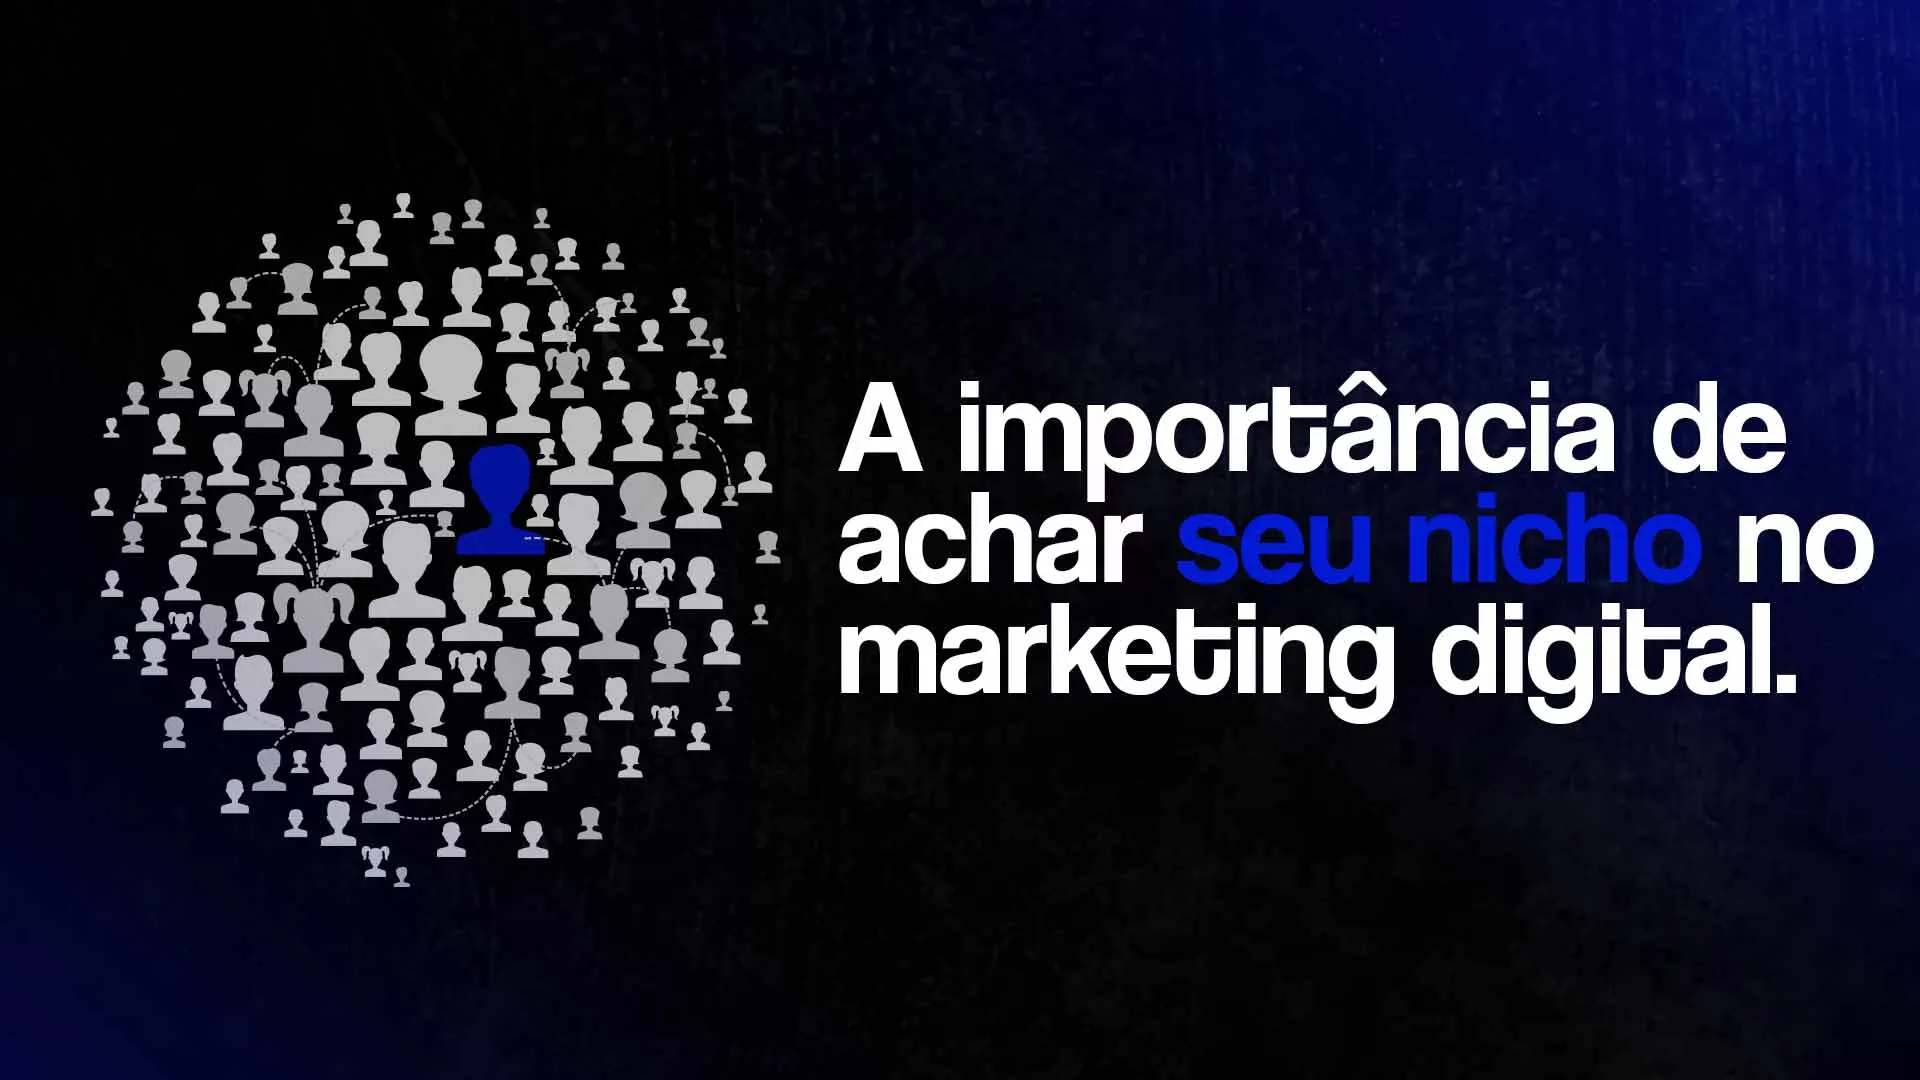 Vários ícones brancos representando pessoas, com um ícone azul em destaque e o seguinte texto: A importância de achar seu nicho no marketing digital